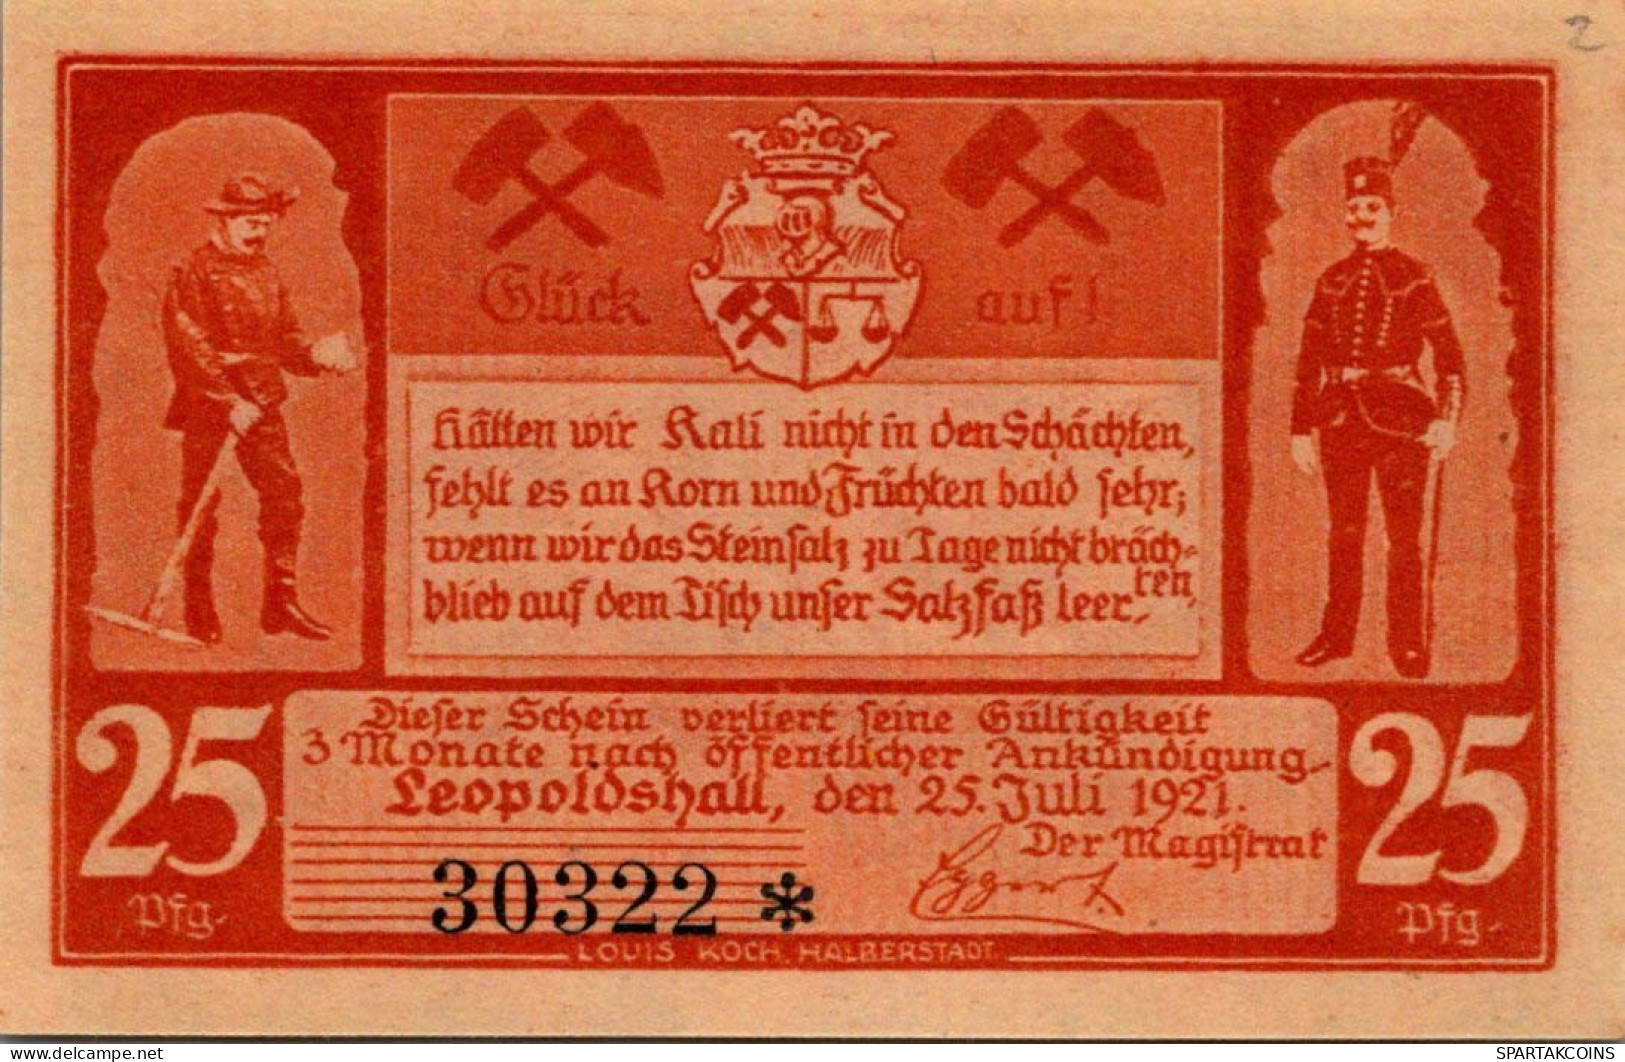 25 PFENNIG 1921 Stadt LEOPOLDSHALL Anhalt UNC DEUTSCHLAND Notgeld #PC161 - [11] Emisiones Locales